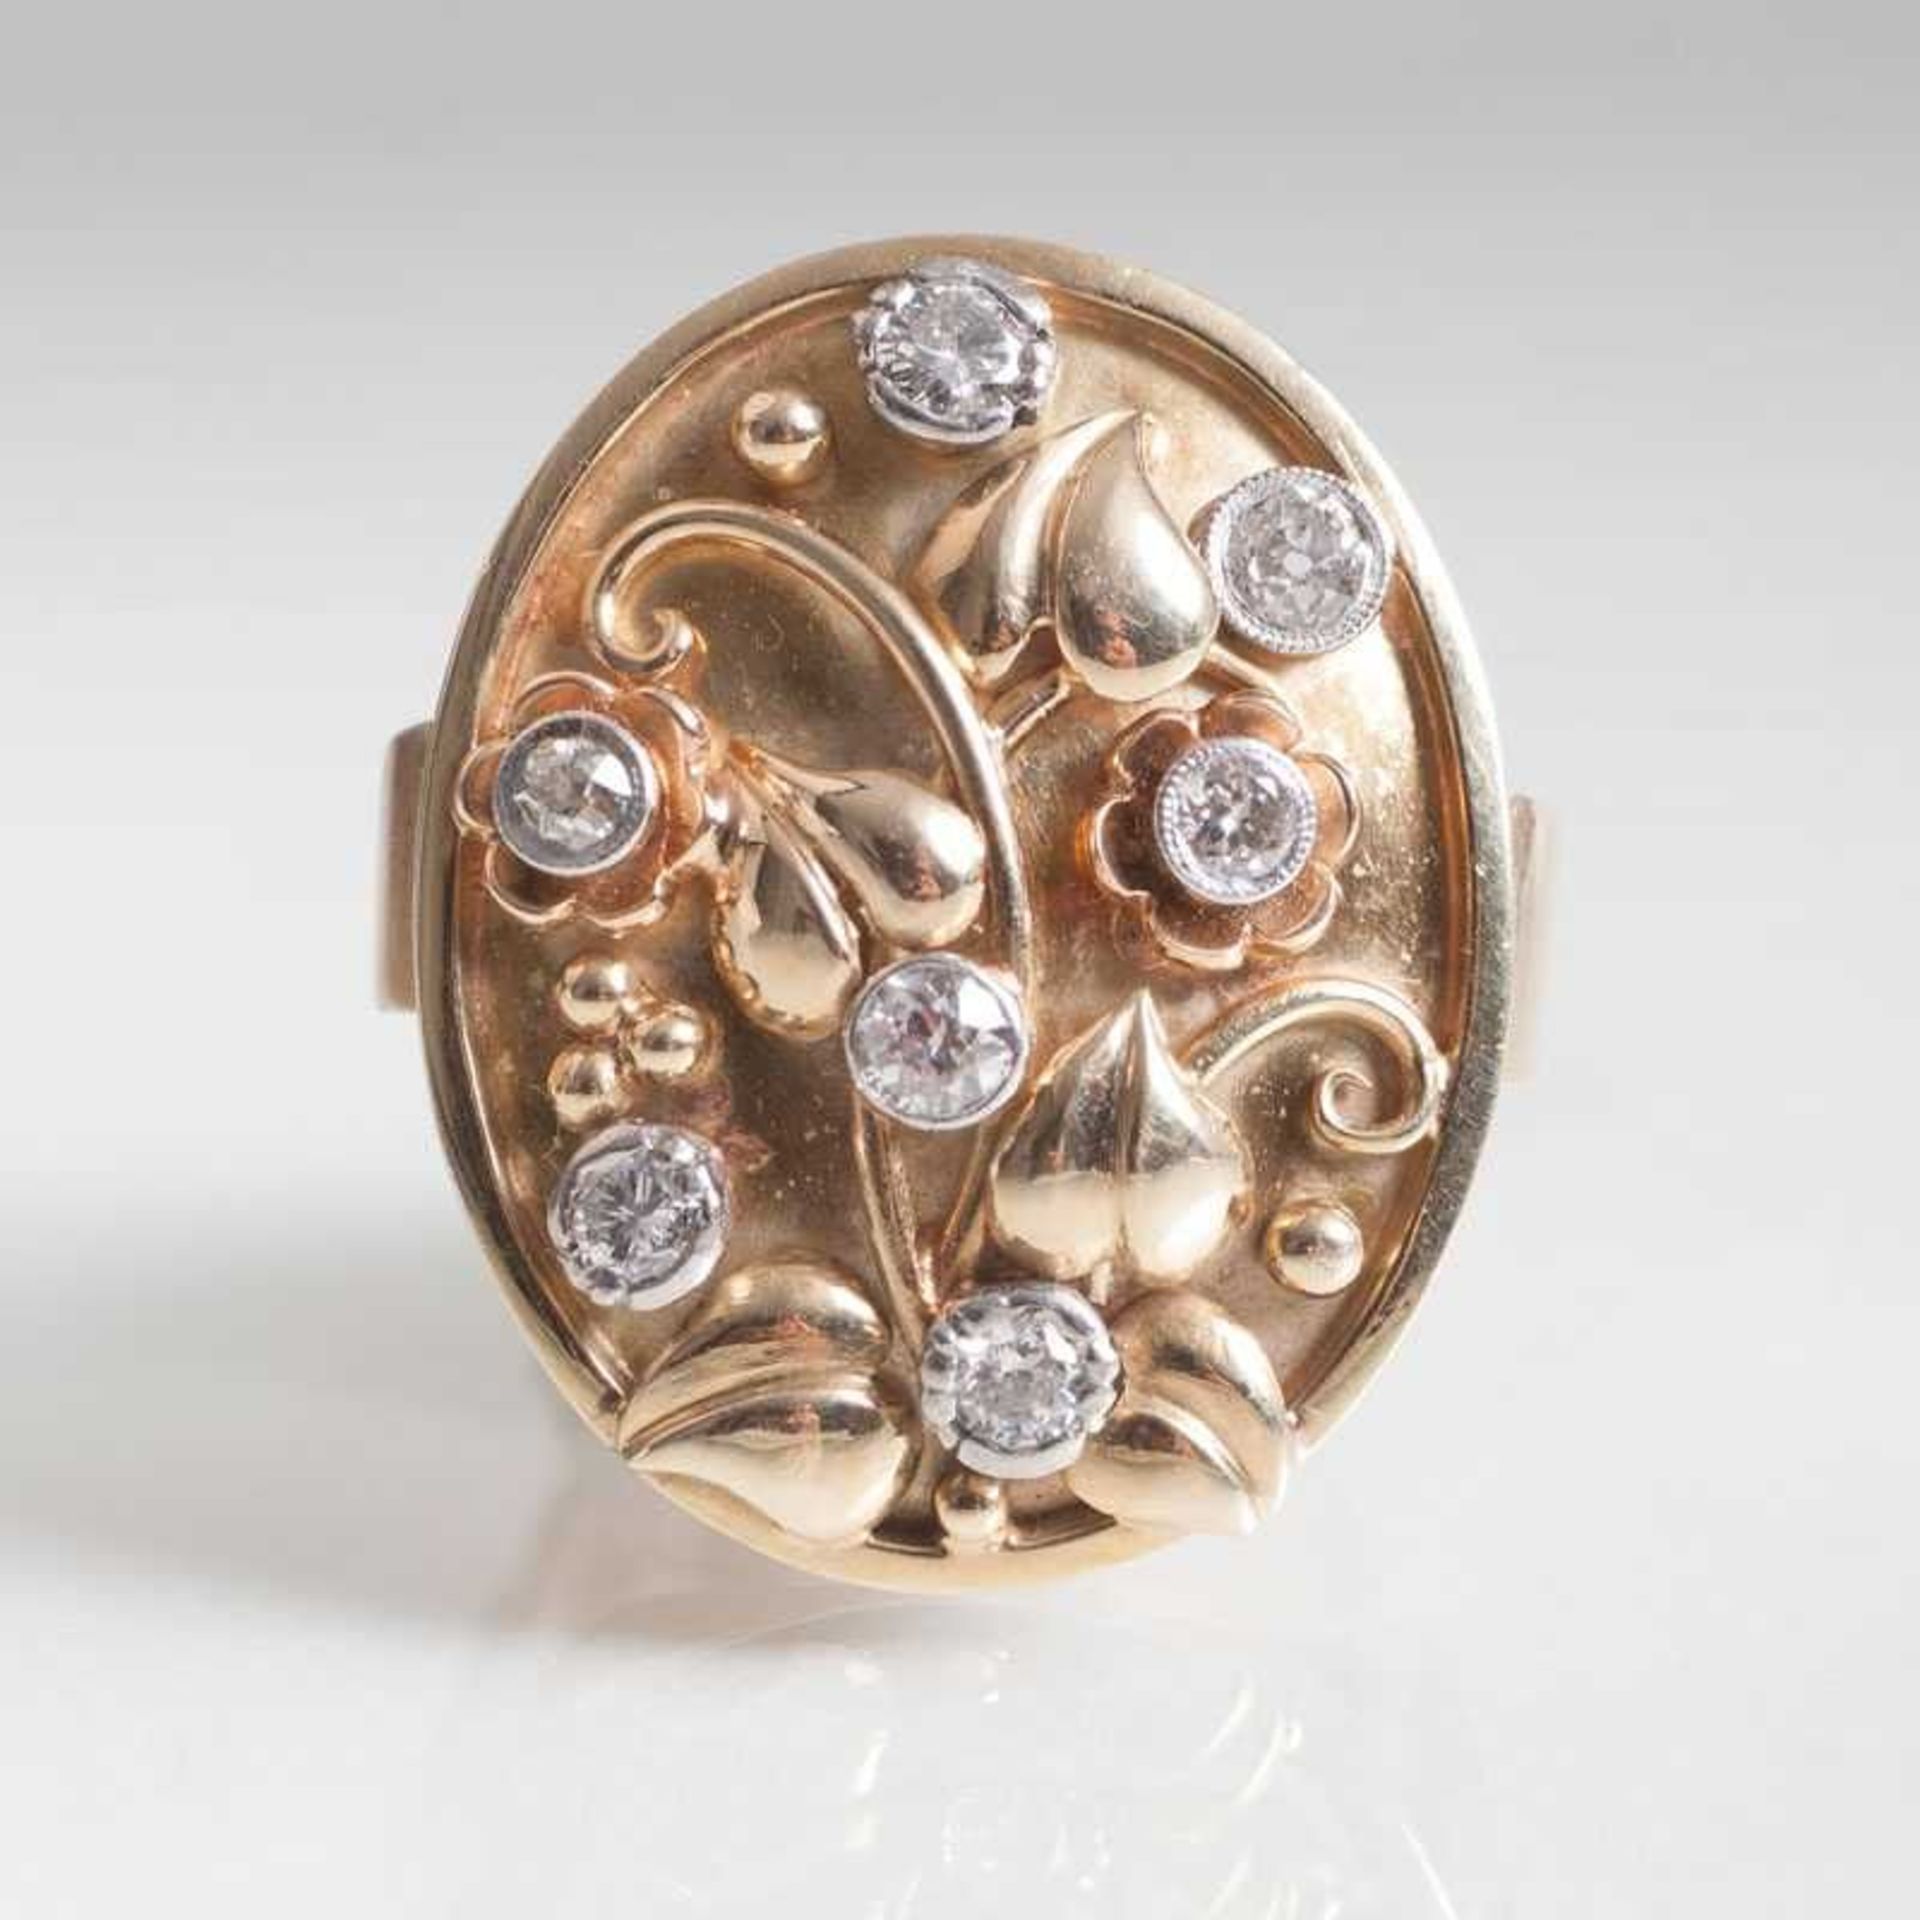 Vintage Gold-Ring mit Blüten-Dekor und Brillanten Um 1930/40. 14 kt. GG mit WG, gest. Ringkopf mit